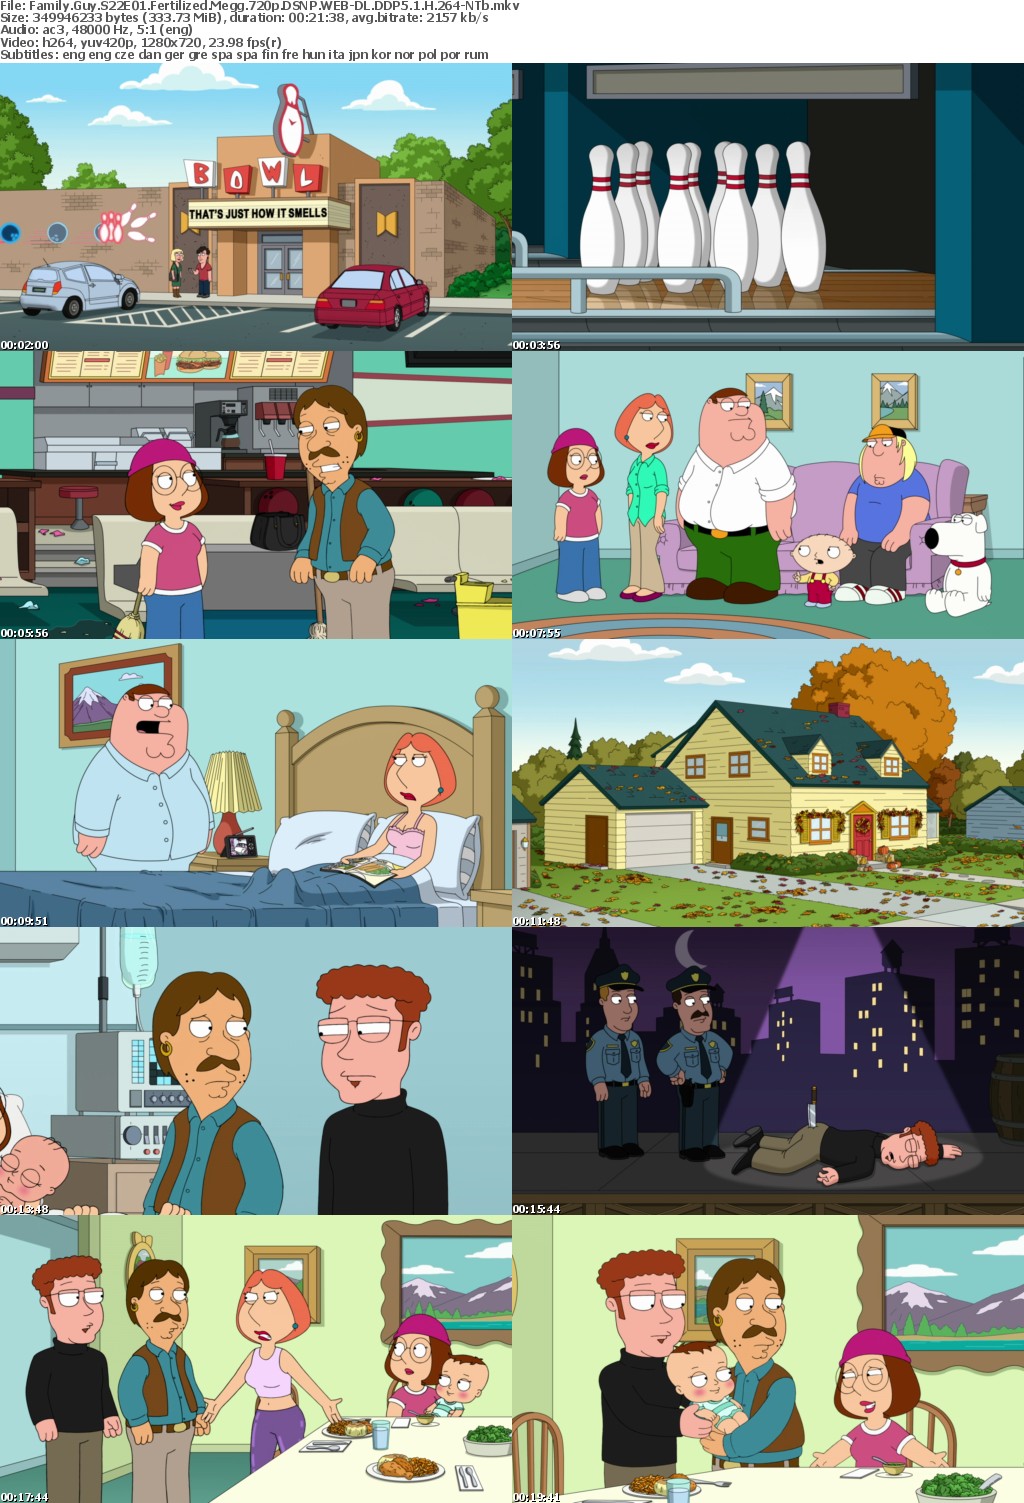 Family Guy S22E01 Fertilized Megg 720p DSNP WEB-DL DDP5 1 H 264-NTb